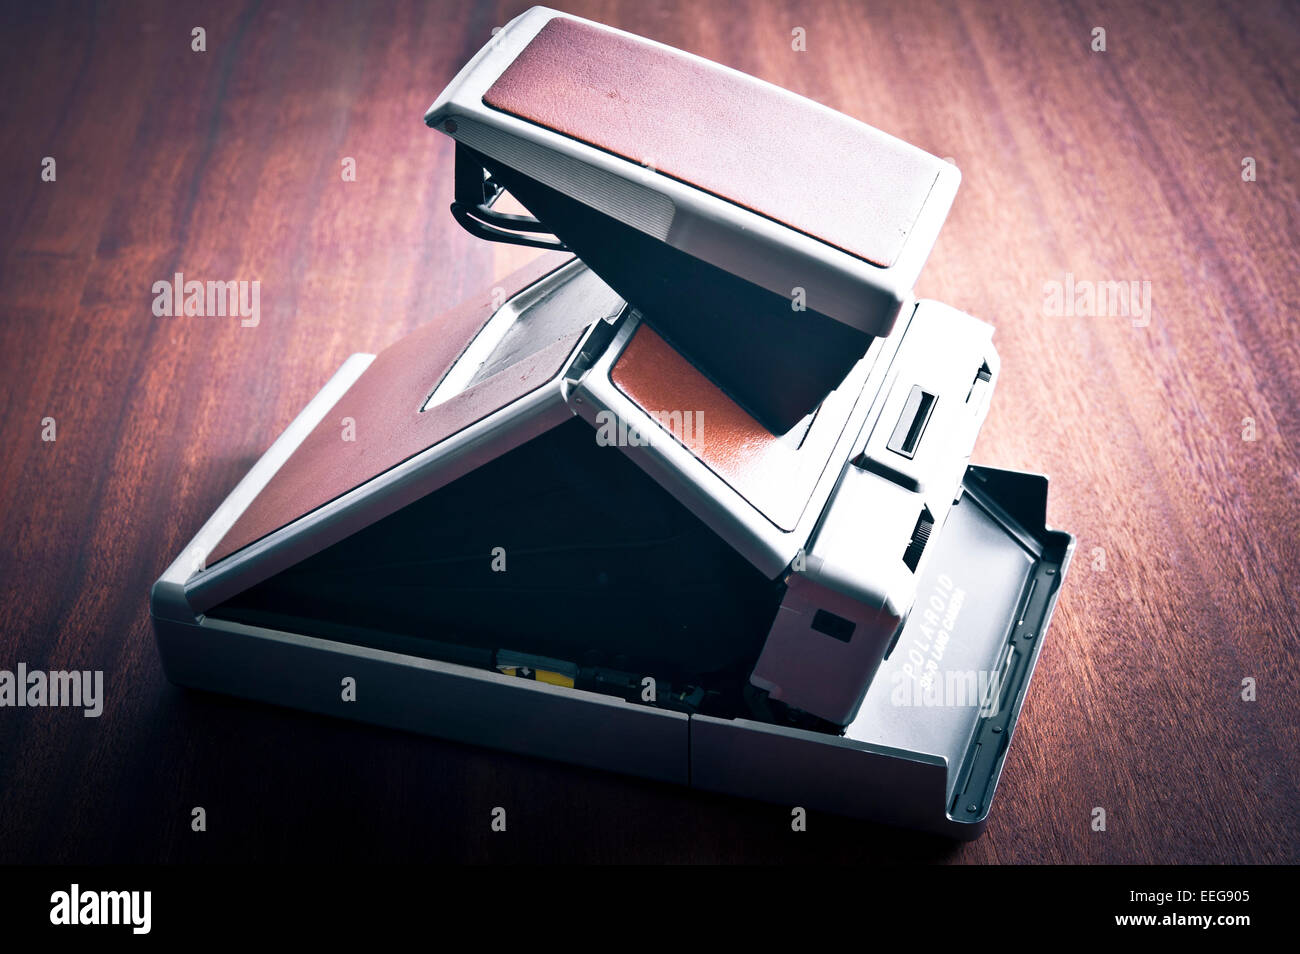 Polaroidkamera SX-70 Land Stockfoto